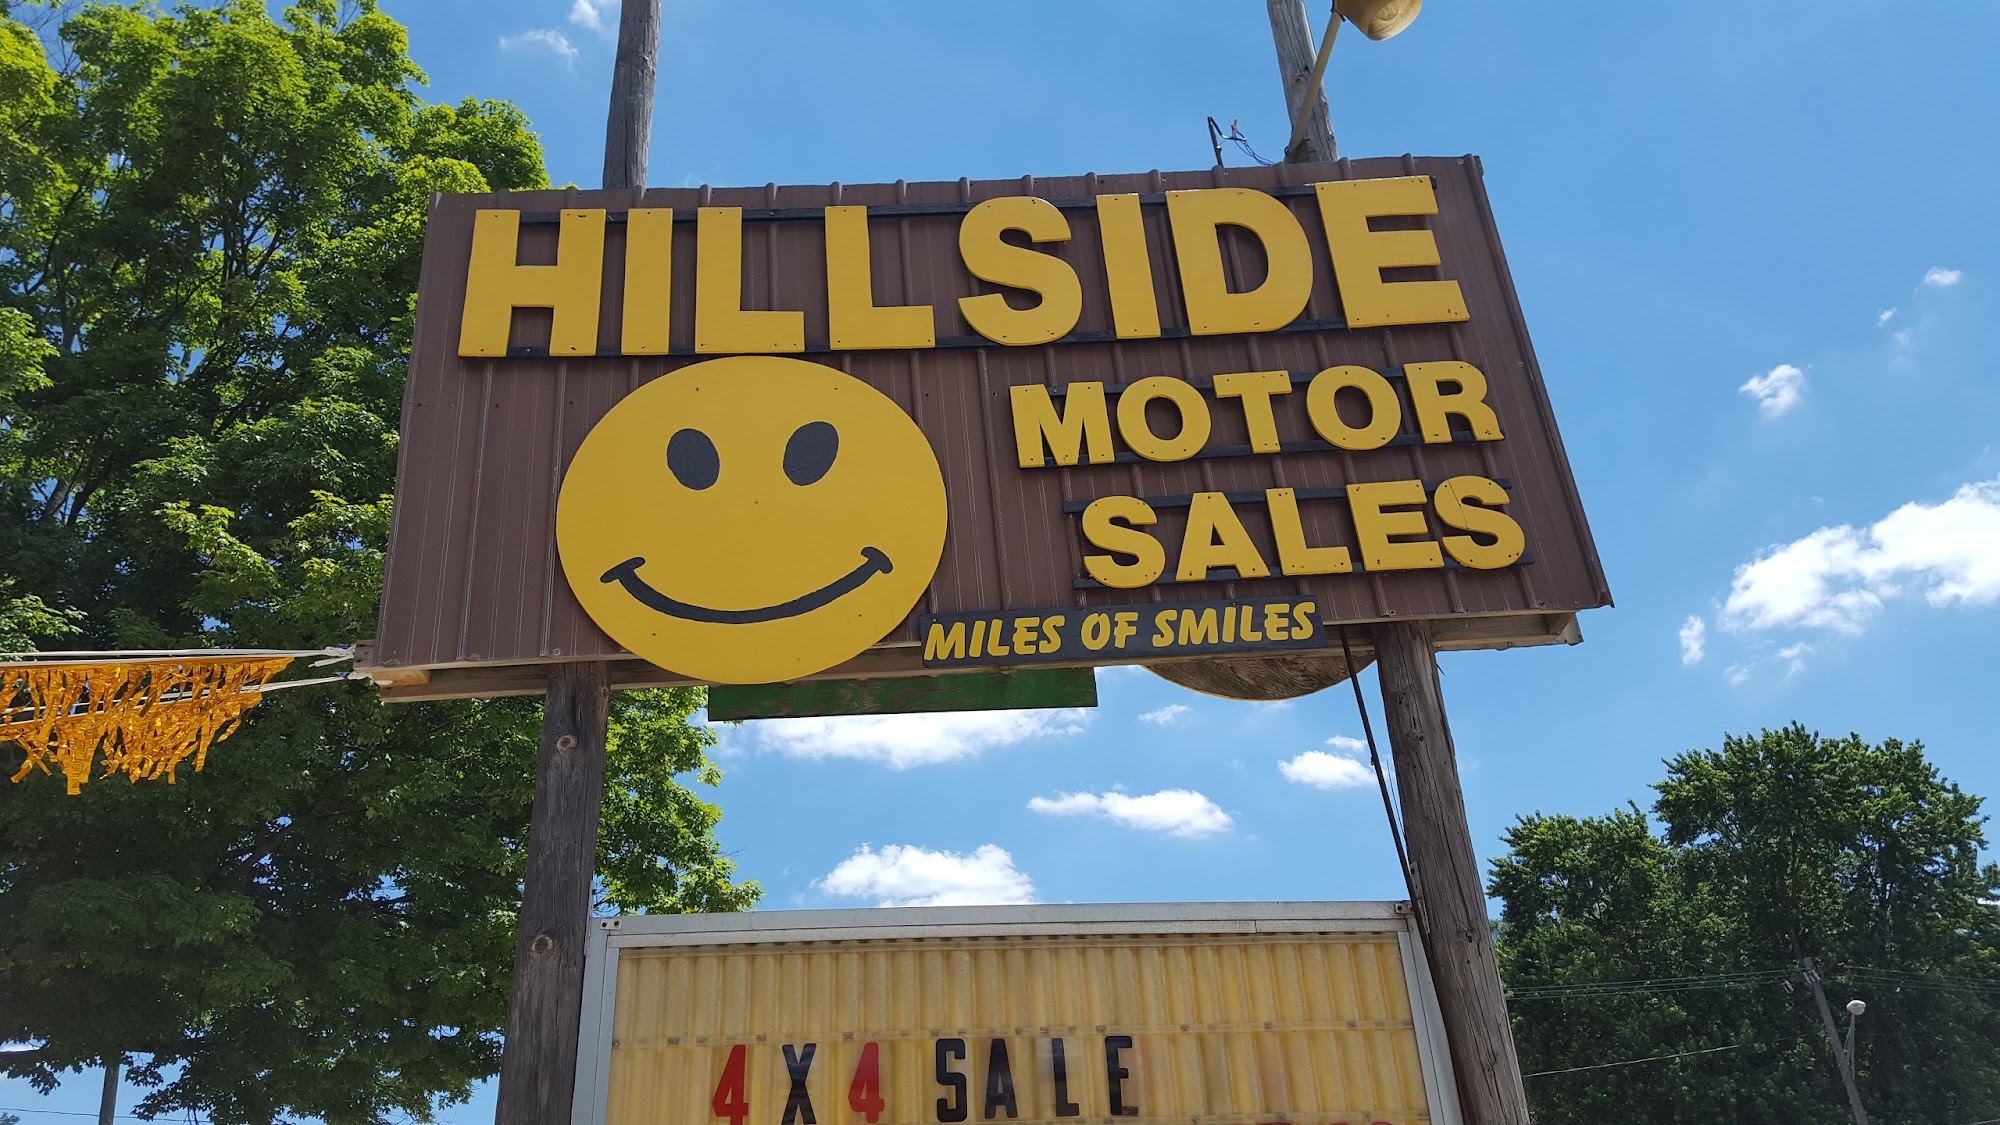 Hillside Motor Sales